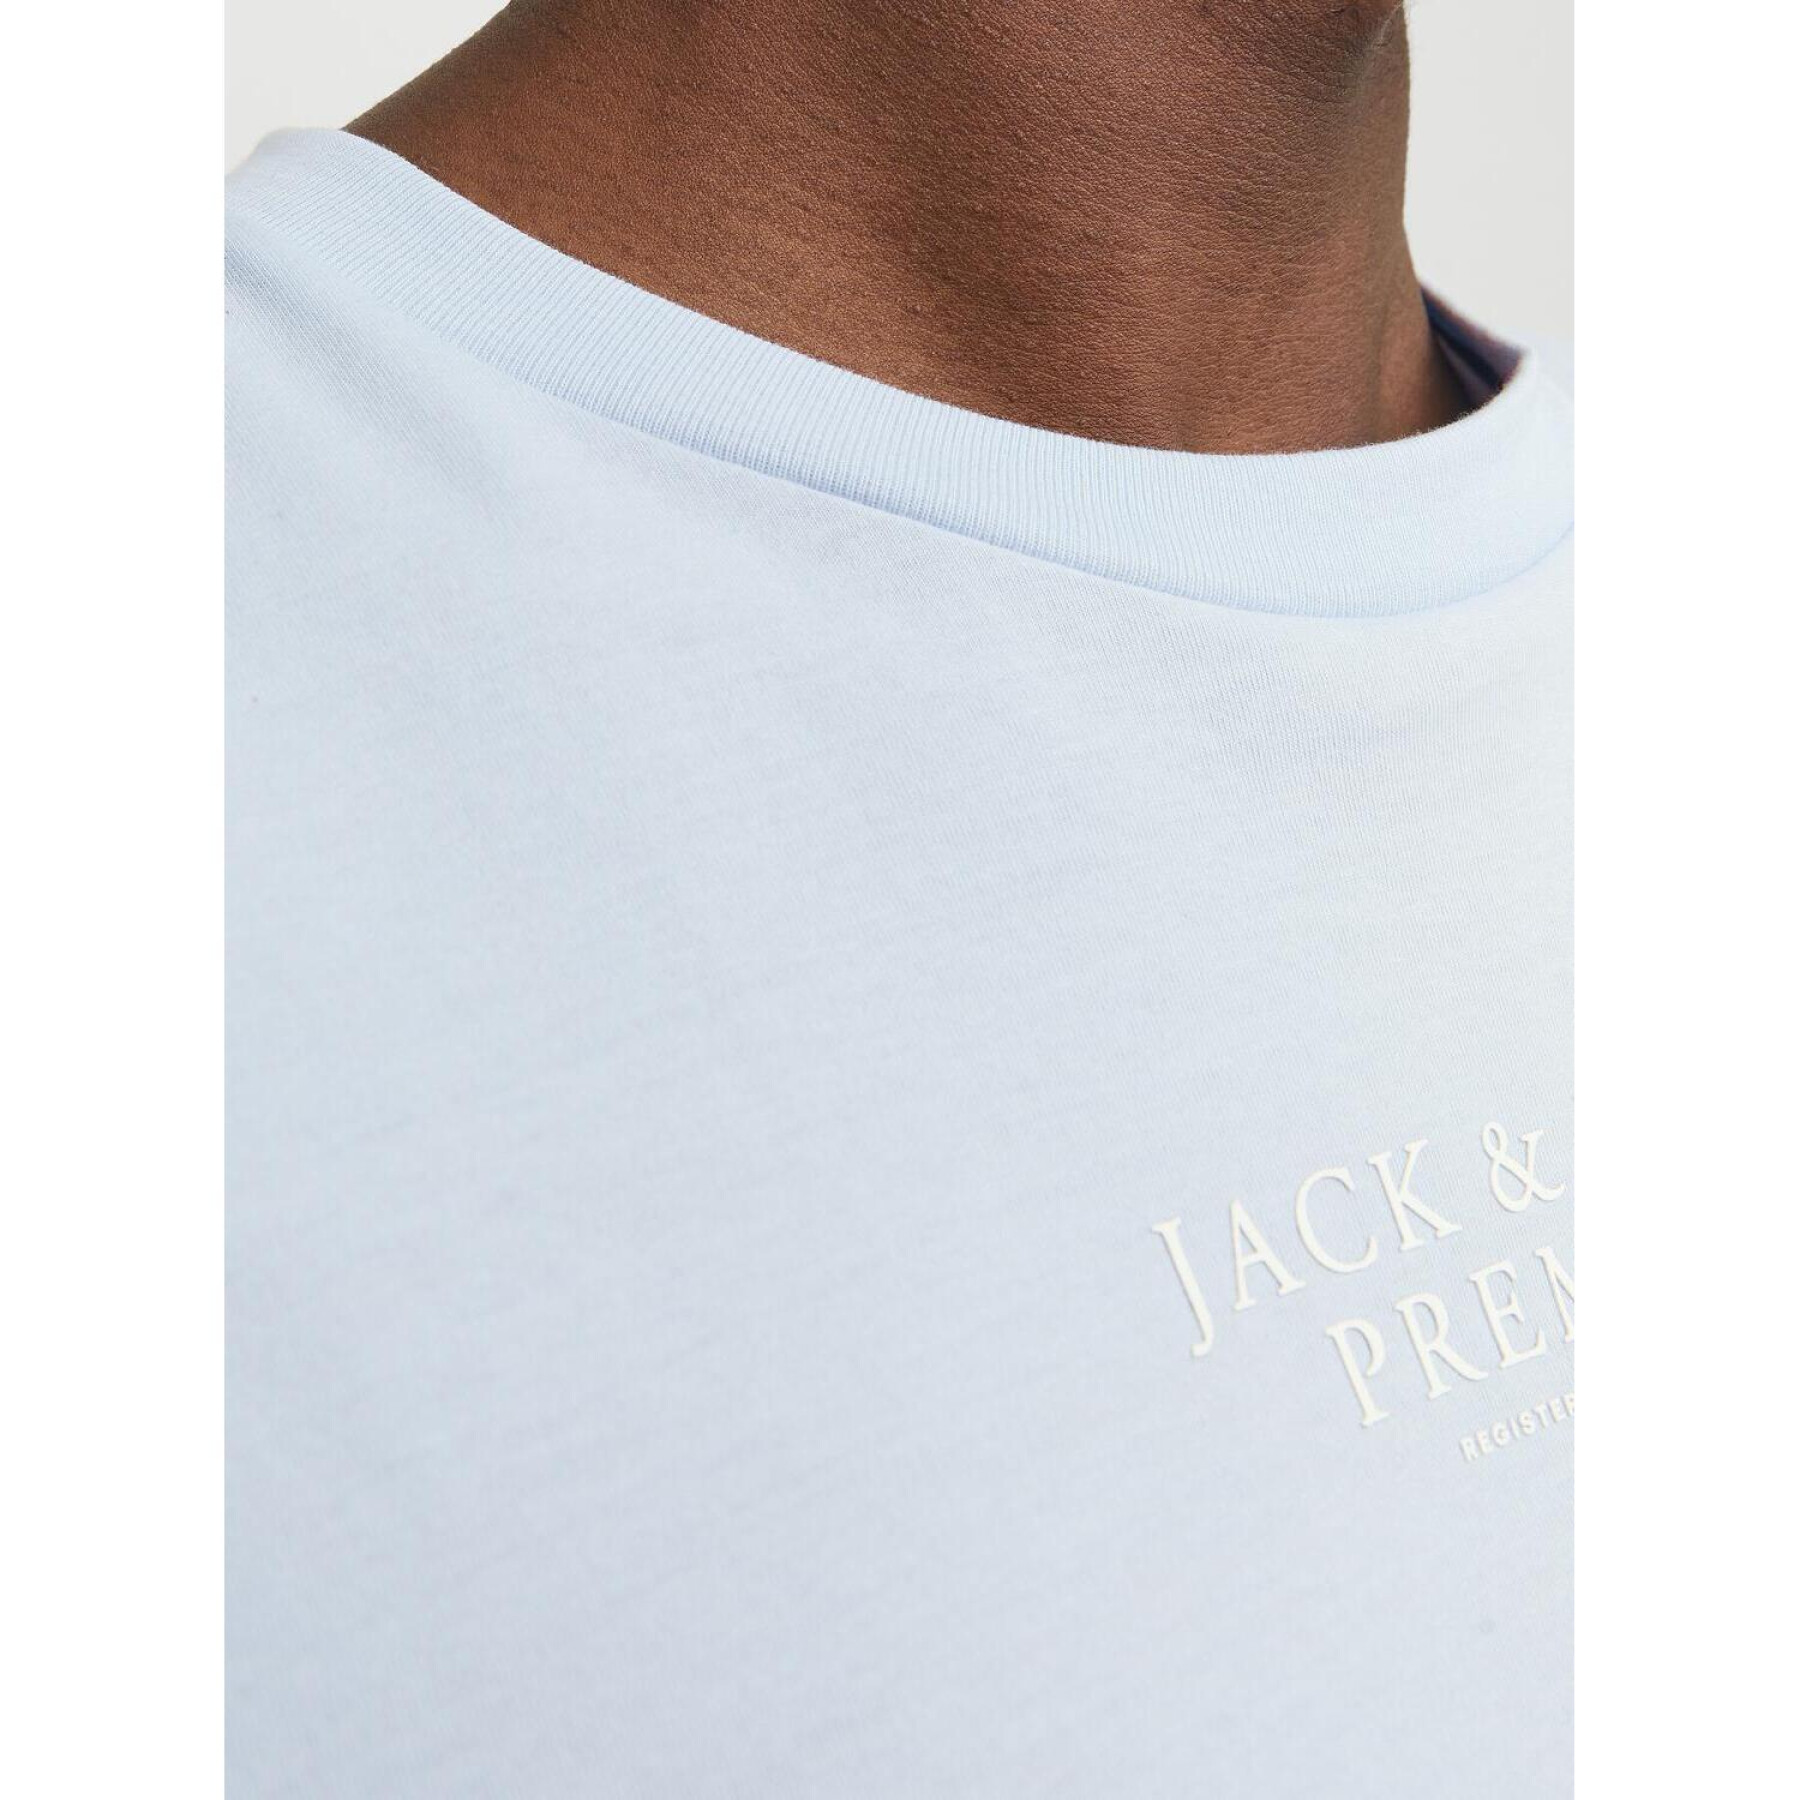 T-shirt Jack & Jones Archie